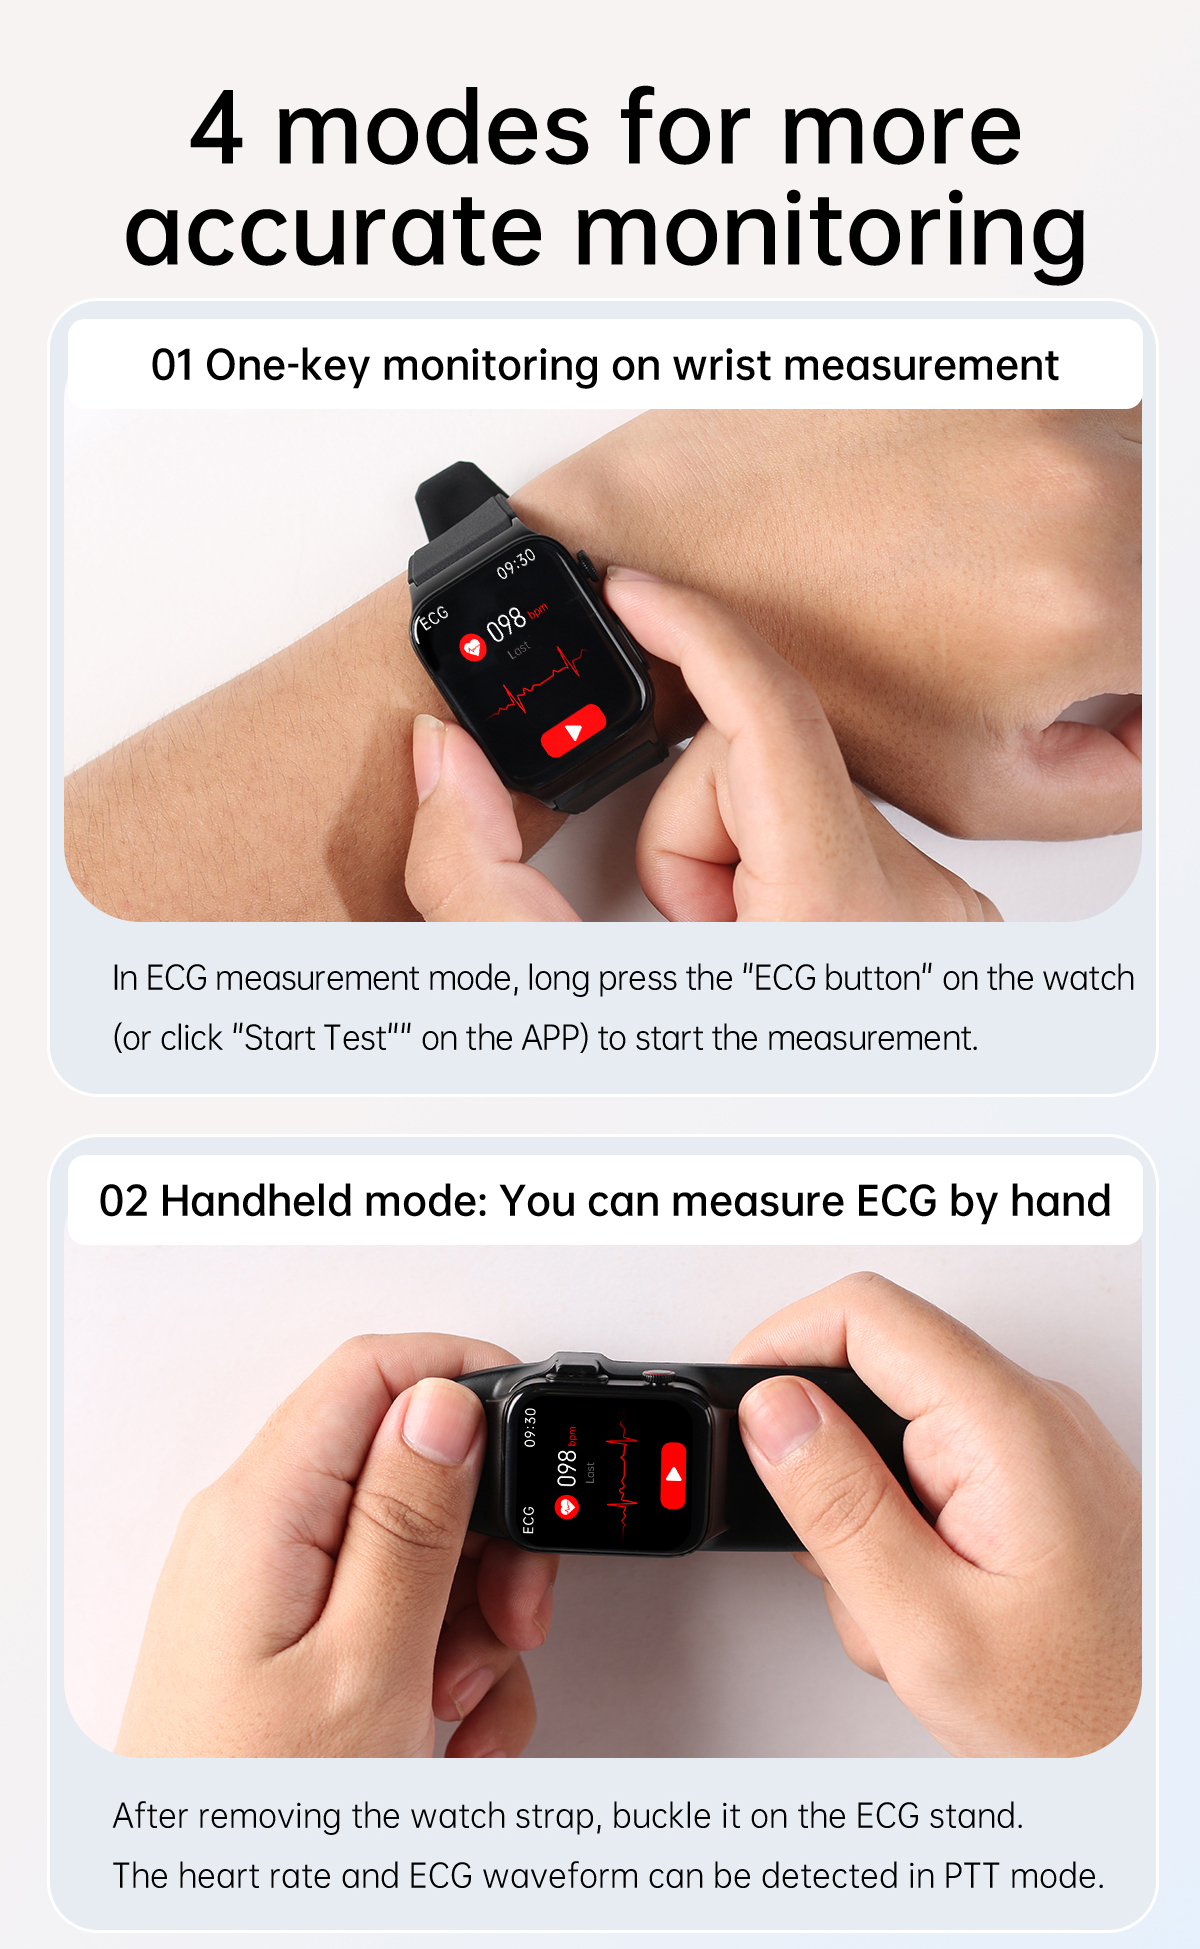 E500 1.83 inch HD Screen ECG Monitor Heart Rate Blood Pressure SpO2 Monitor Fitness Tracker 280mAh Battery BT 5.1 IP68 Waterproof Smart Watch